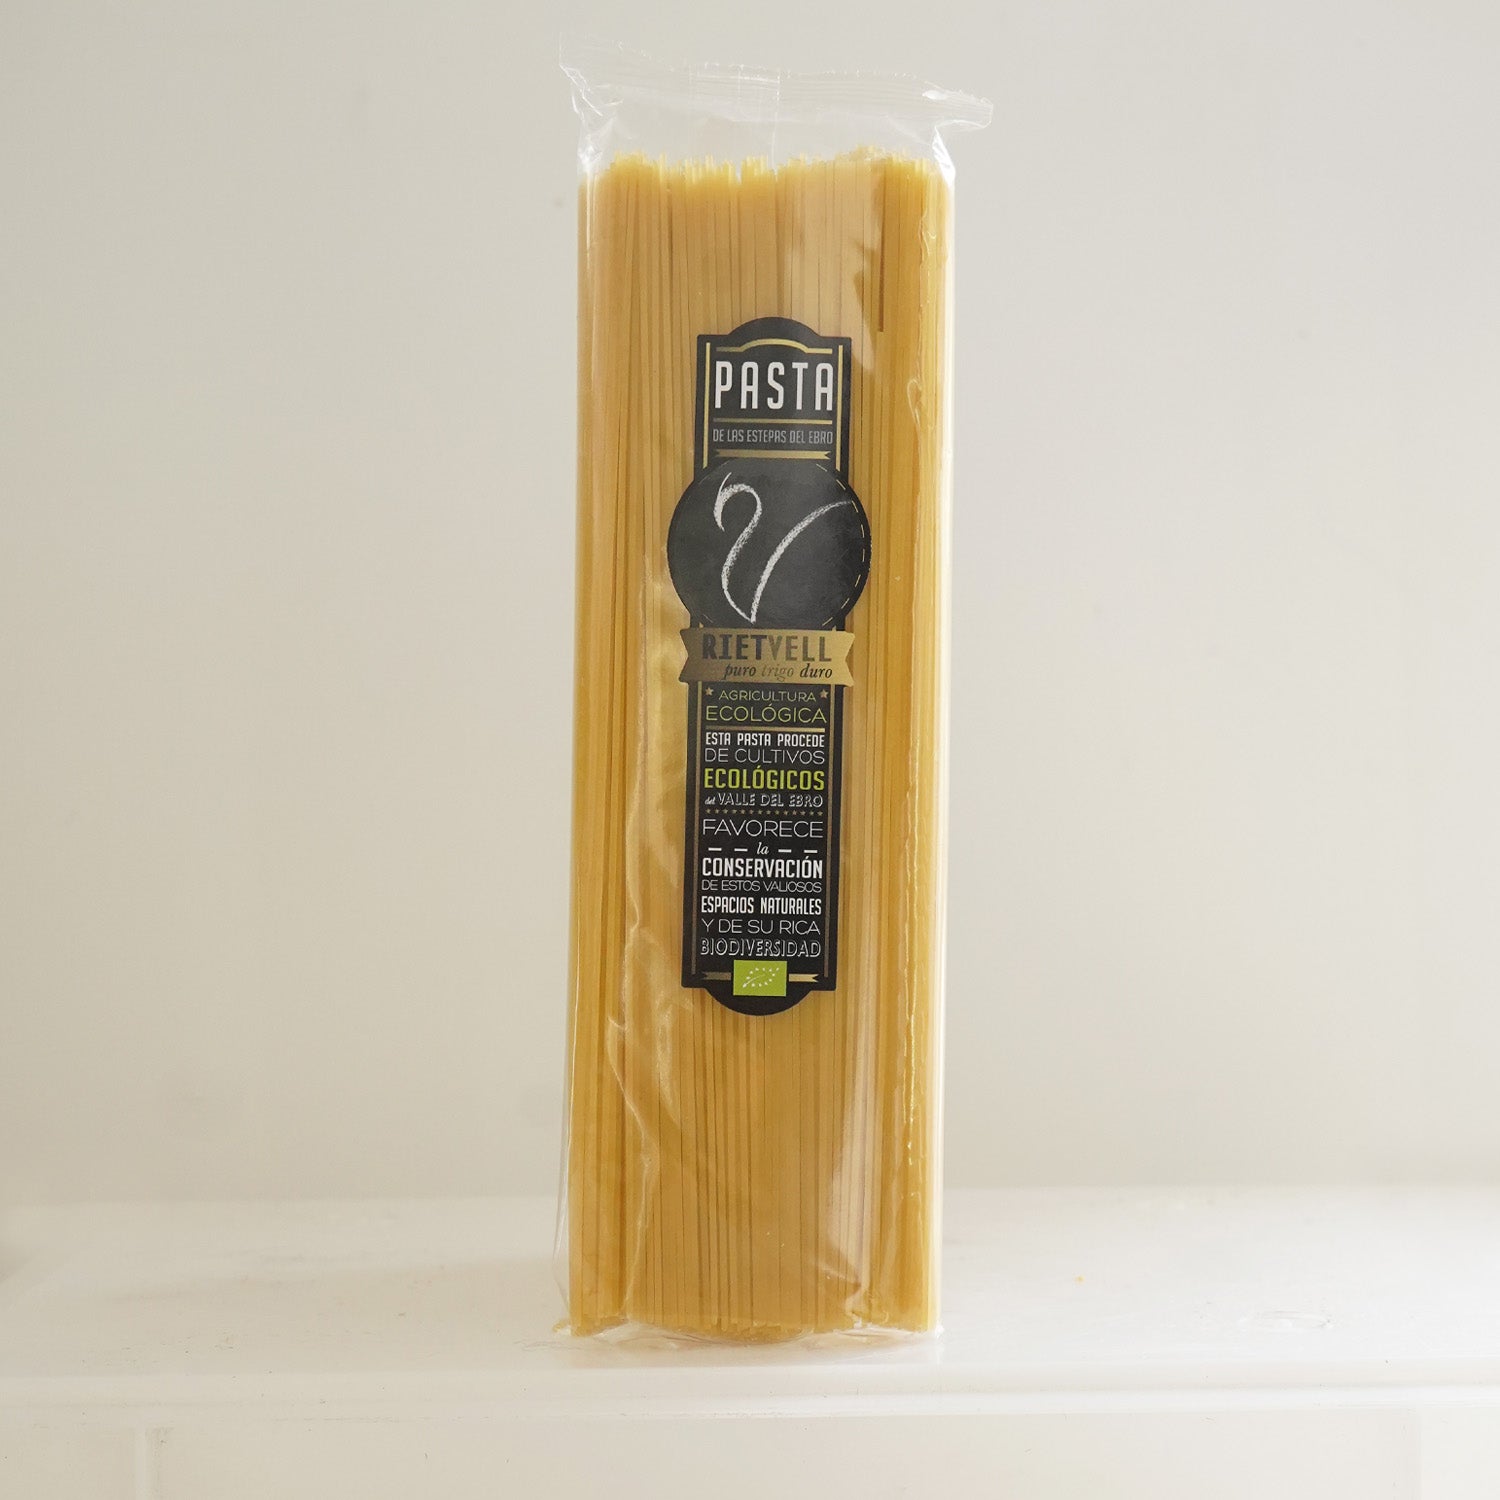 Paquete de espaguetis ecológicos de la marca rietvell